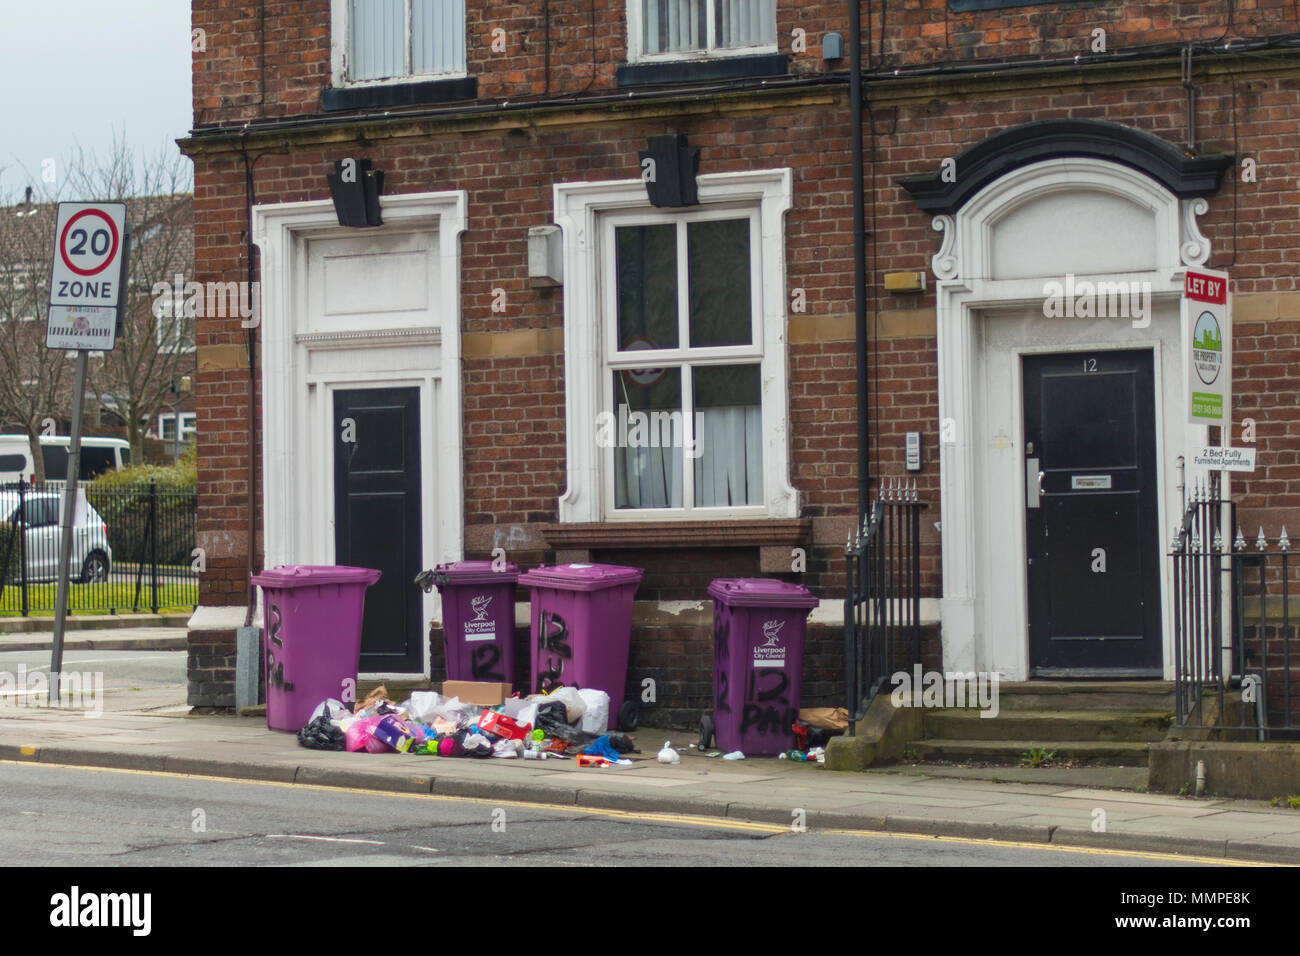 Les bacs d'ordures Merseyside violet en face d'eux dans la rue Banque D'Images